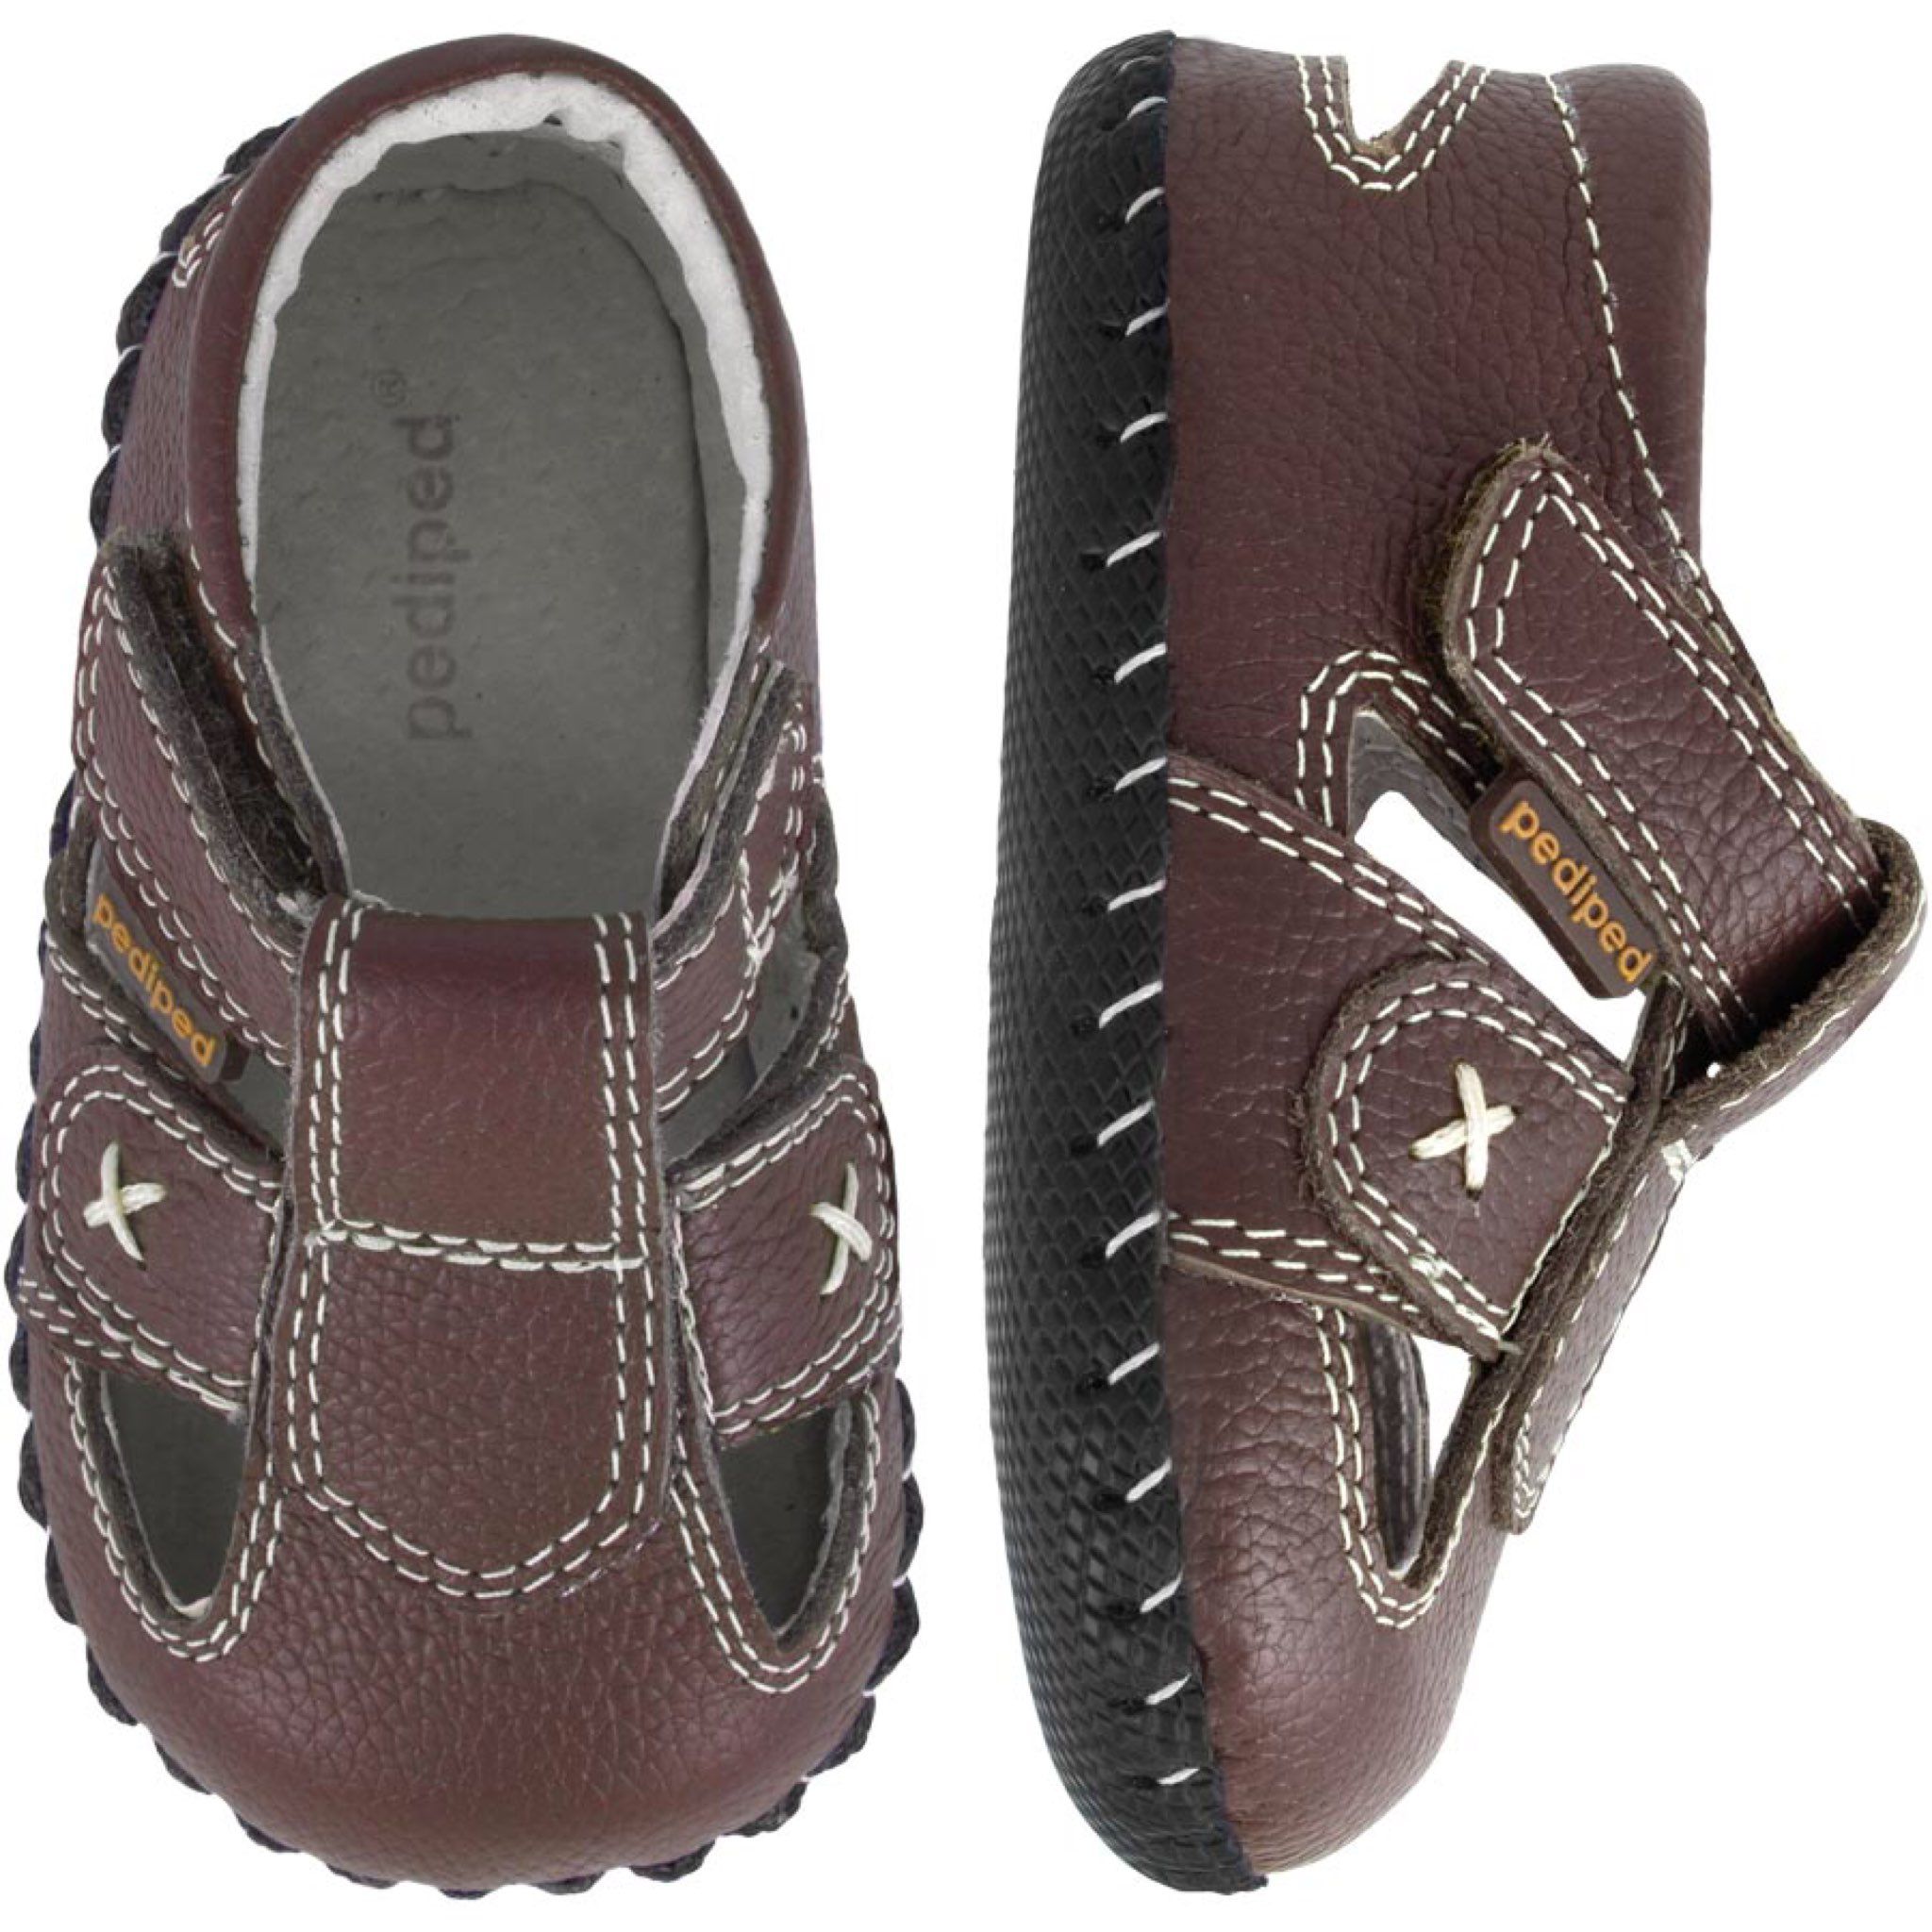 出售美國Pediped學步鞋